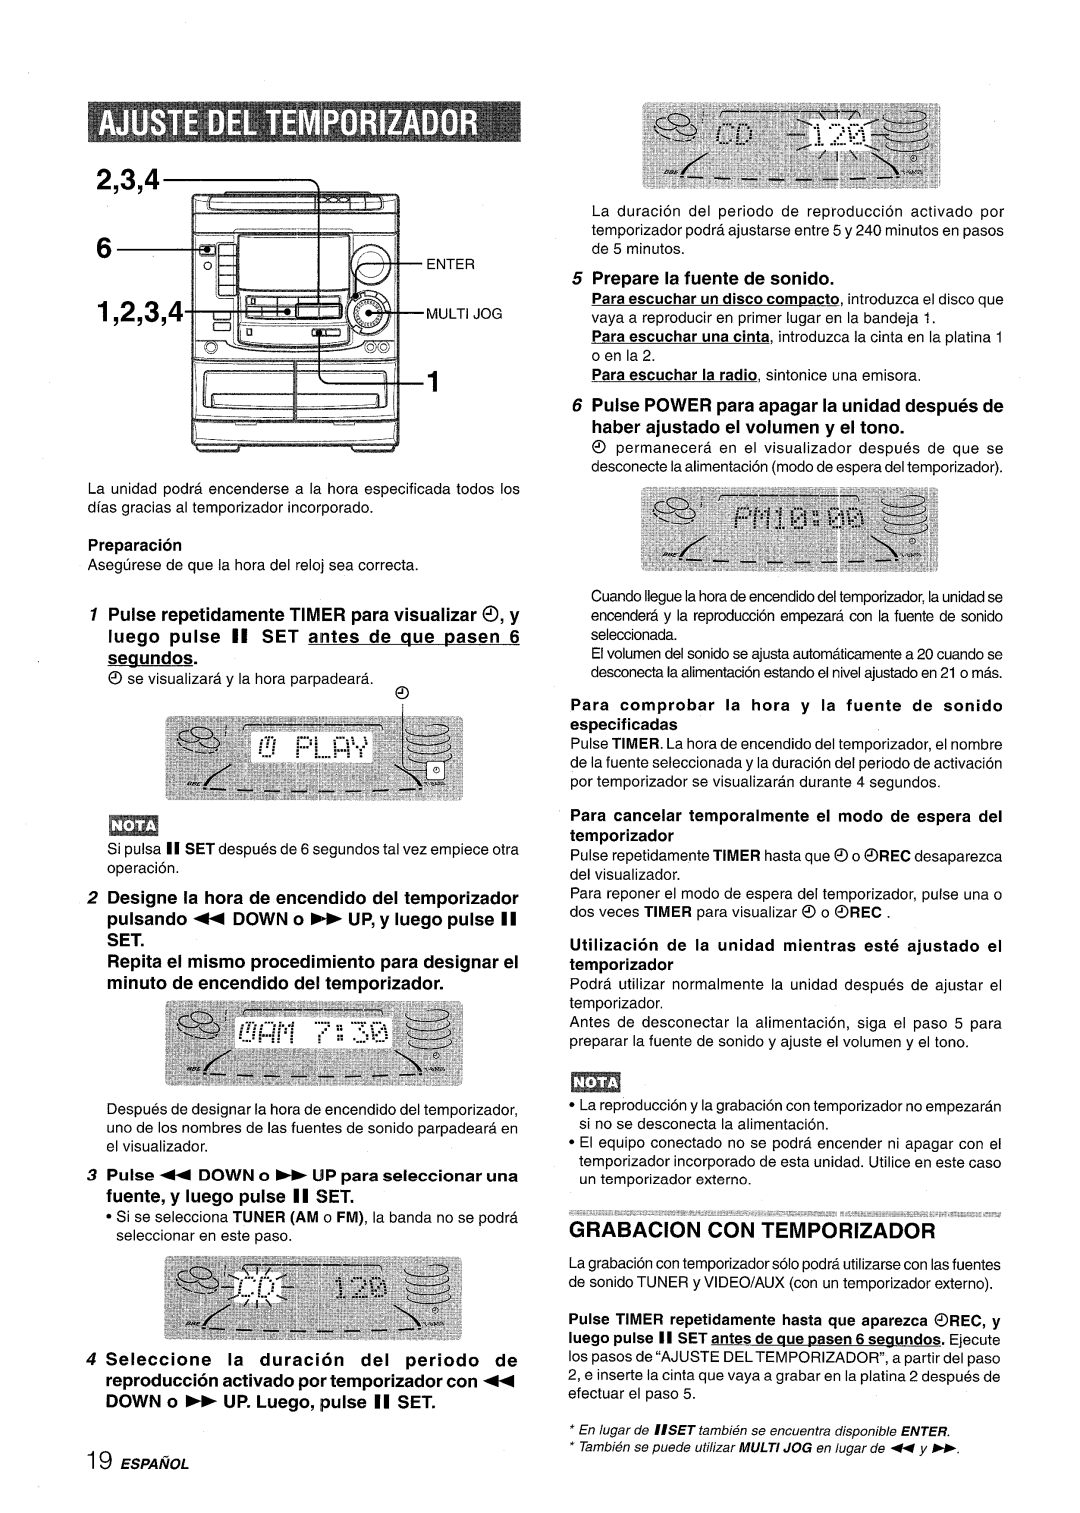 Aiwa NSX-A508 manual 2,3,4, Grabacion Con Temporizador, Pulse repetidamente TIMER para visualizer ~, y 